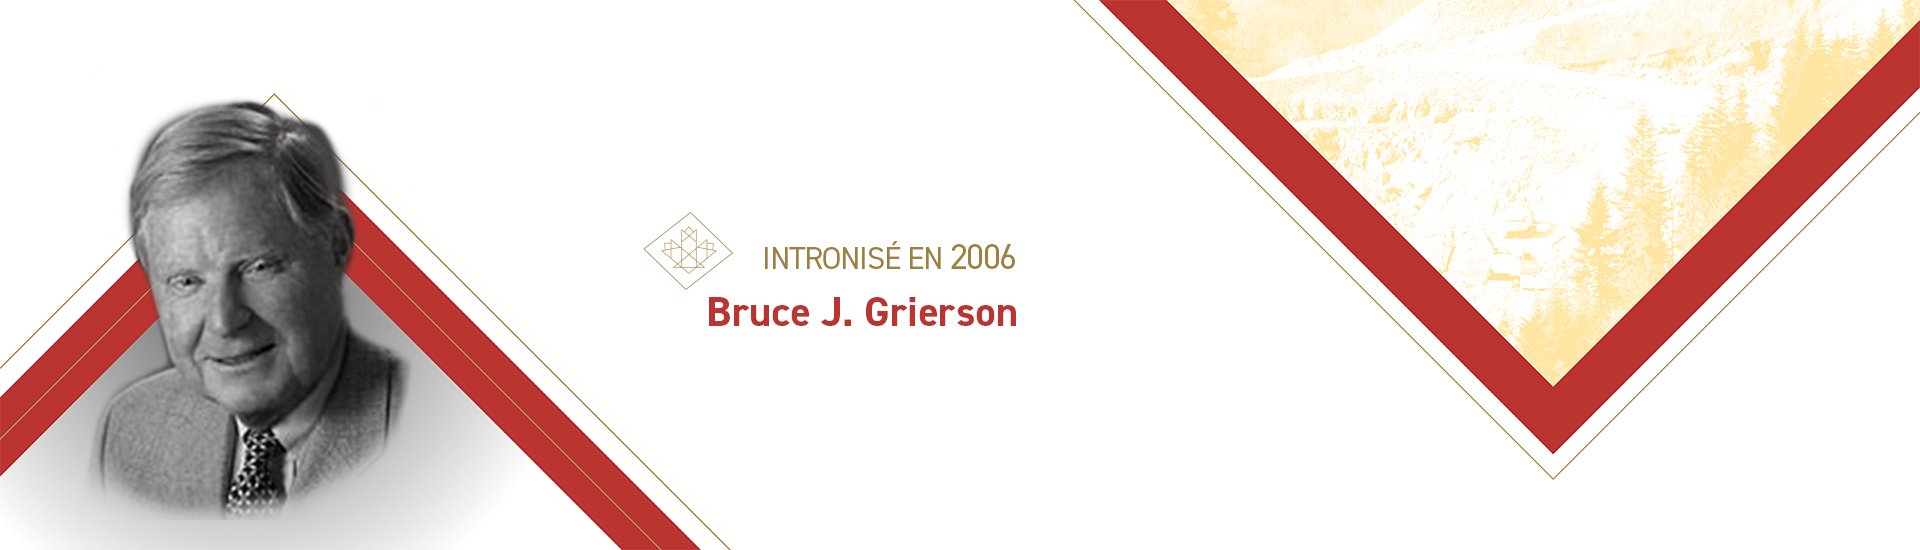 Bruce J. Grierson (b. 1939)